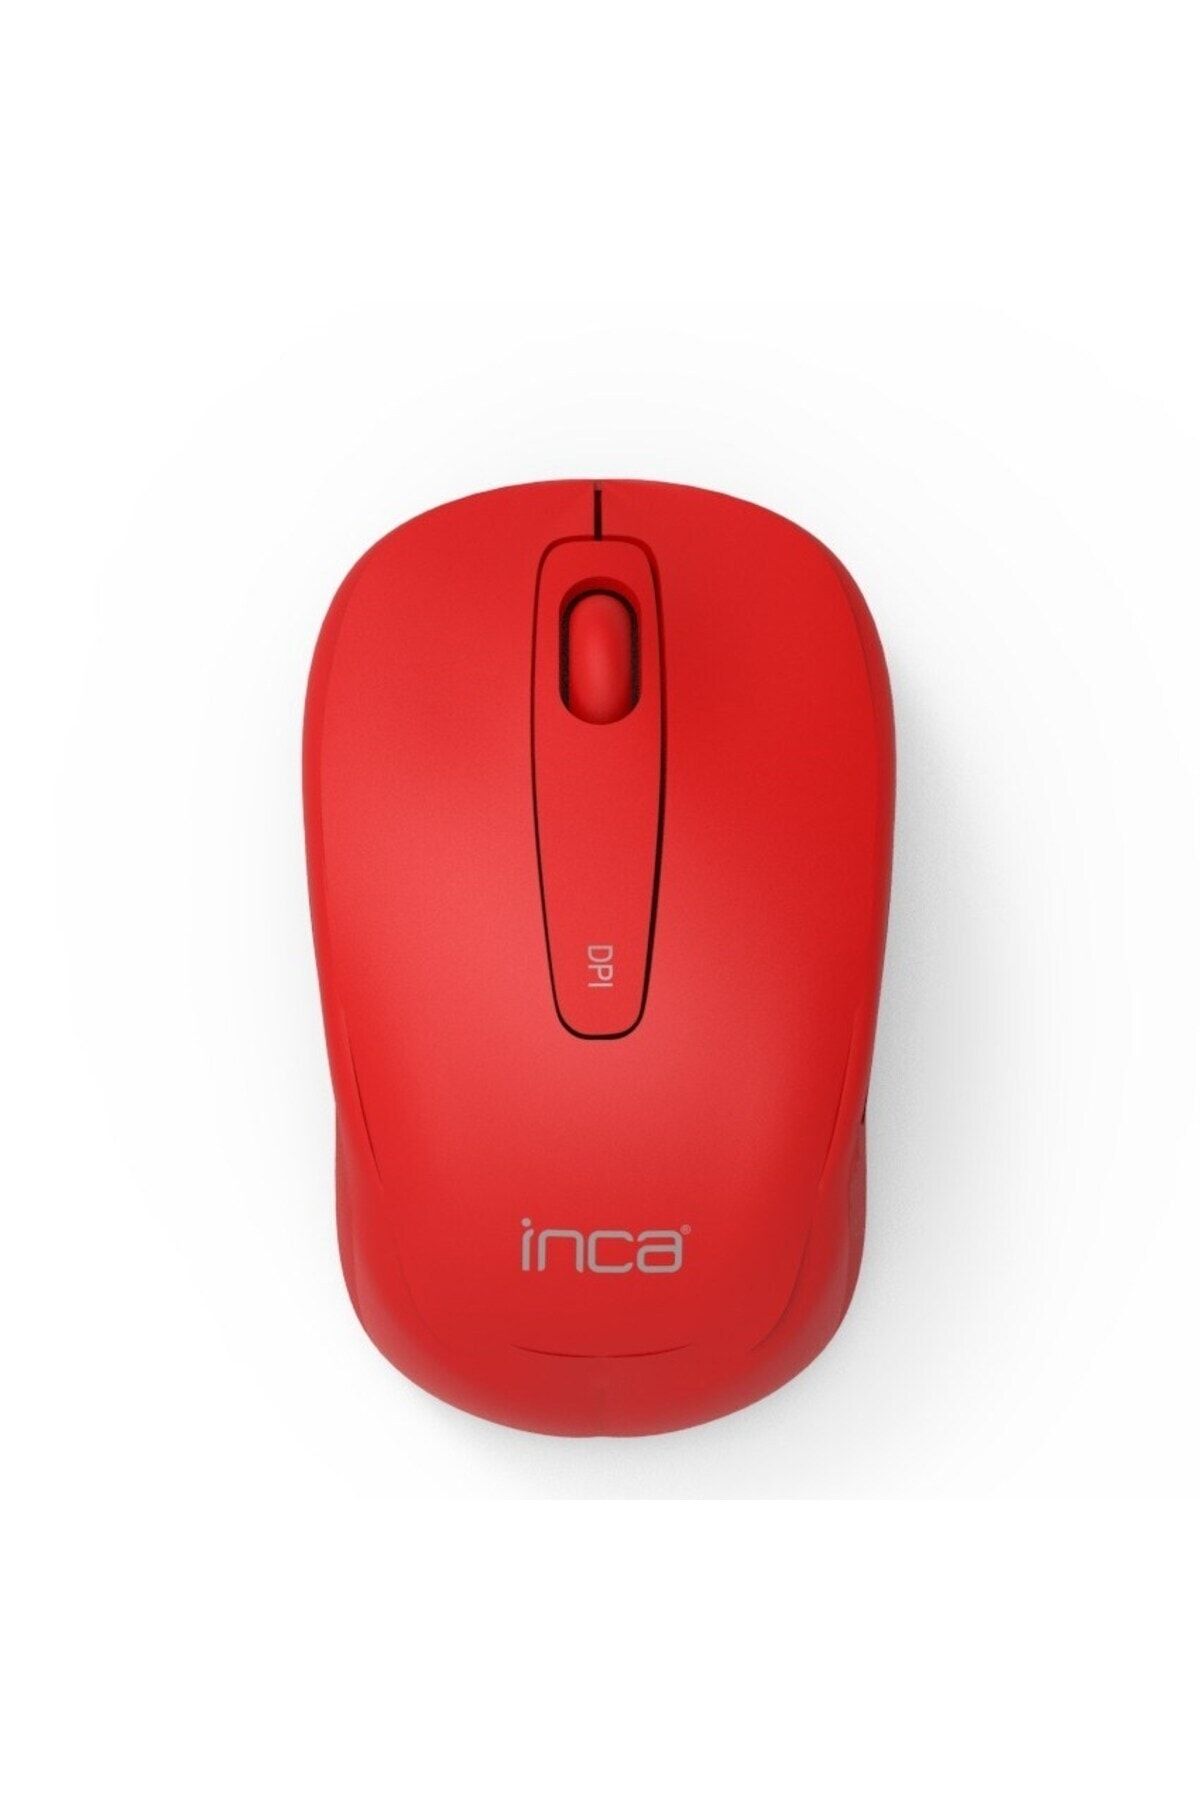 Inca Iwm-331rk Silent Wireless Sessiz Mouse - Kırmızı